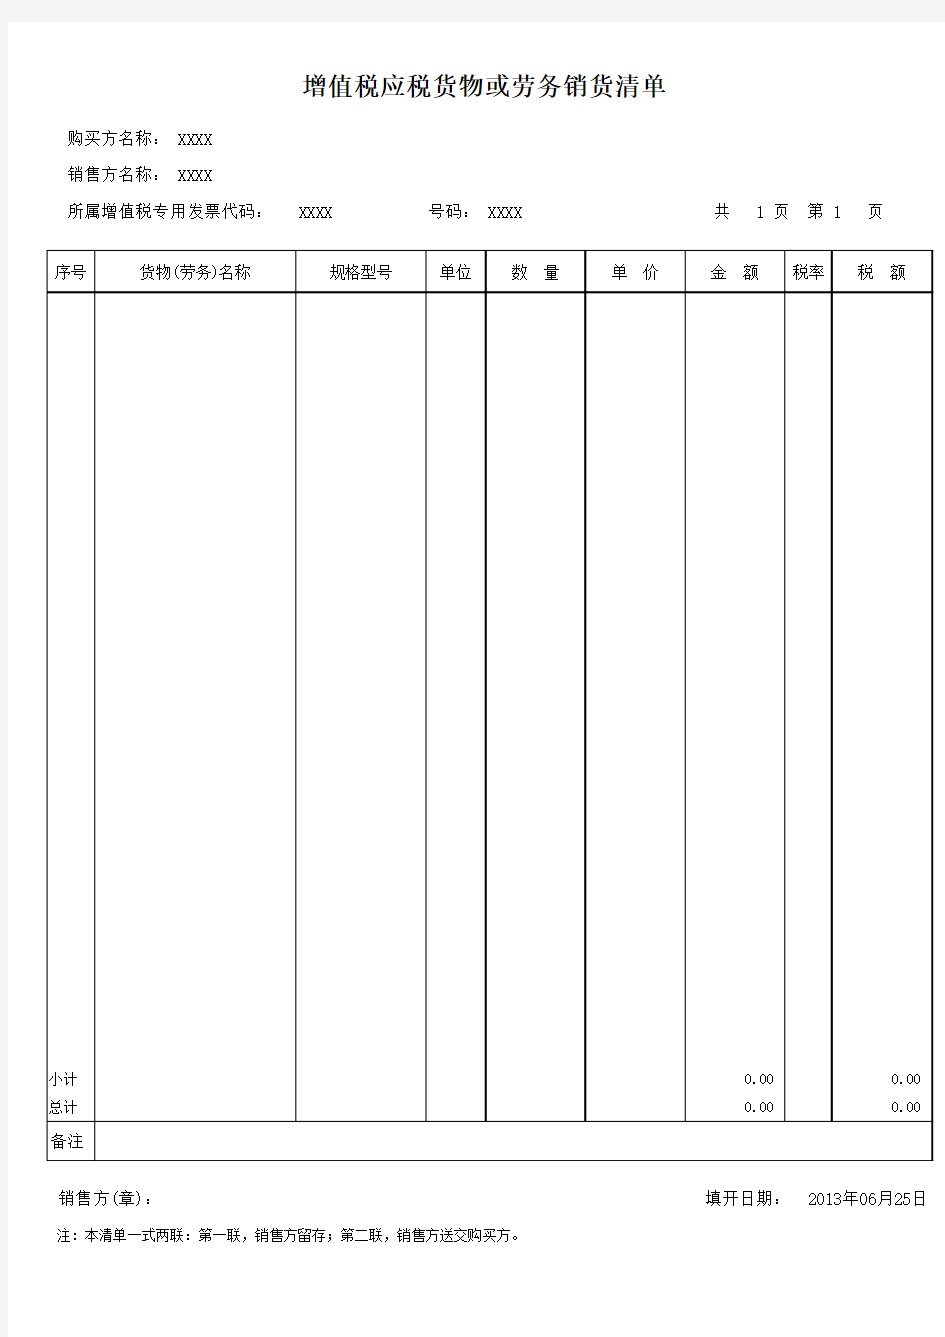 增值税发票销货清单(含17%计算公式)